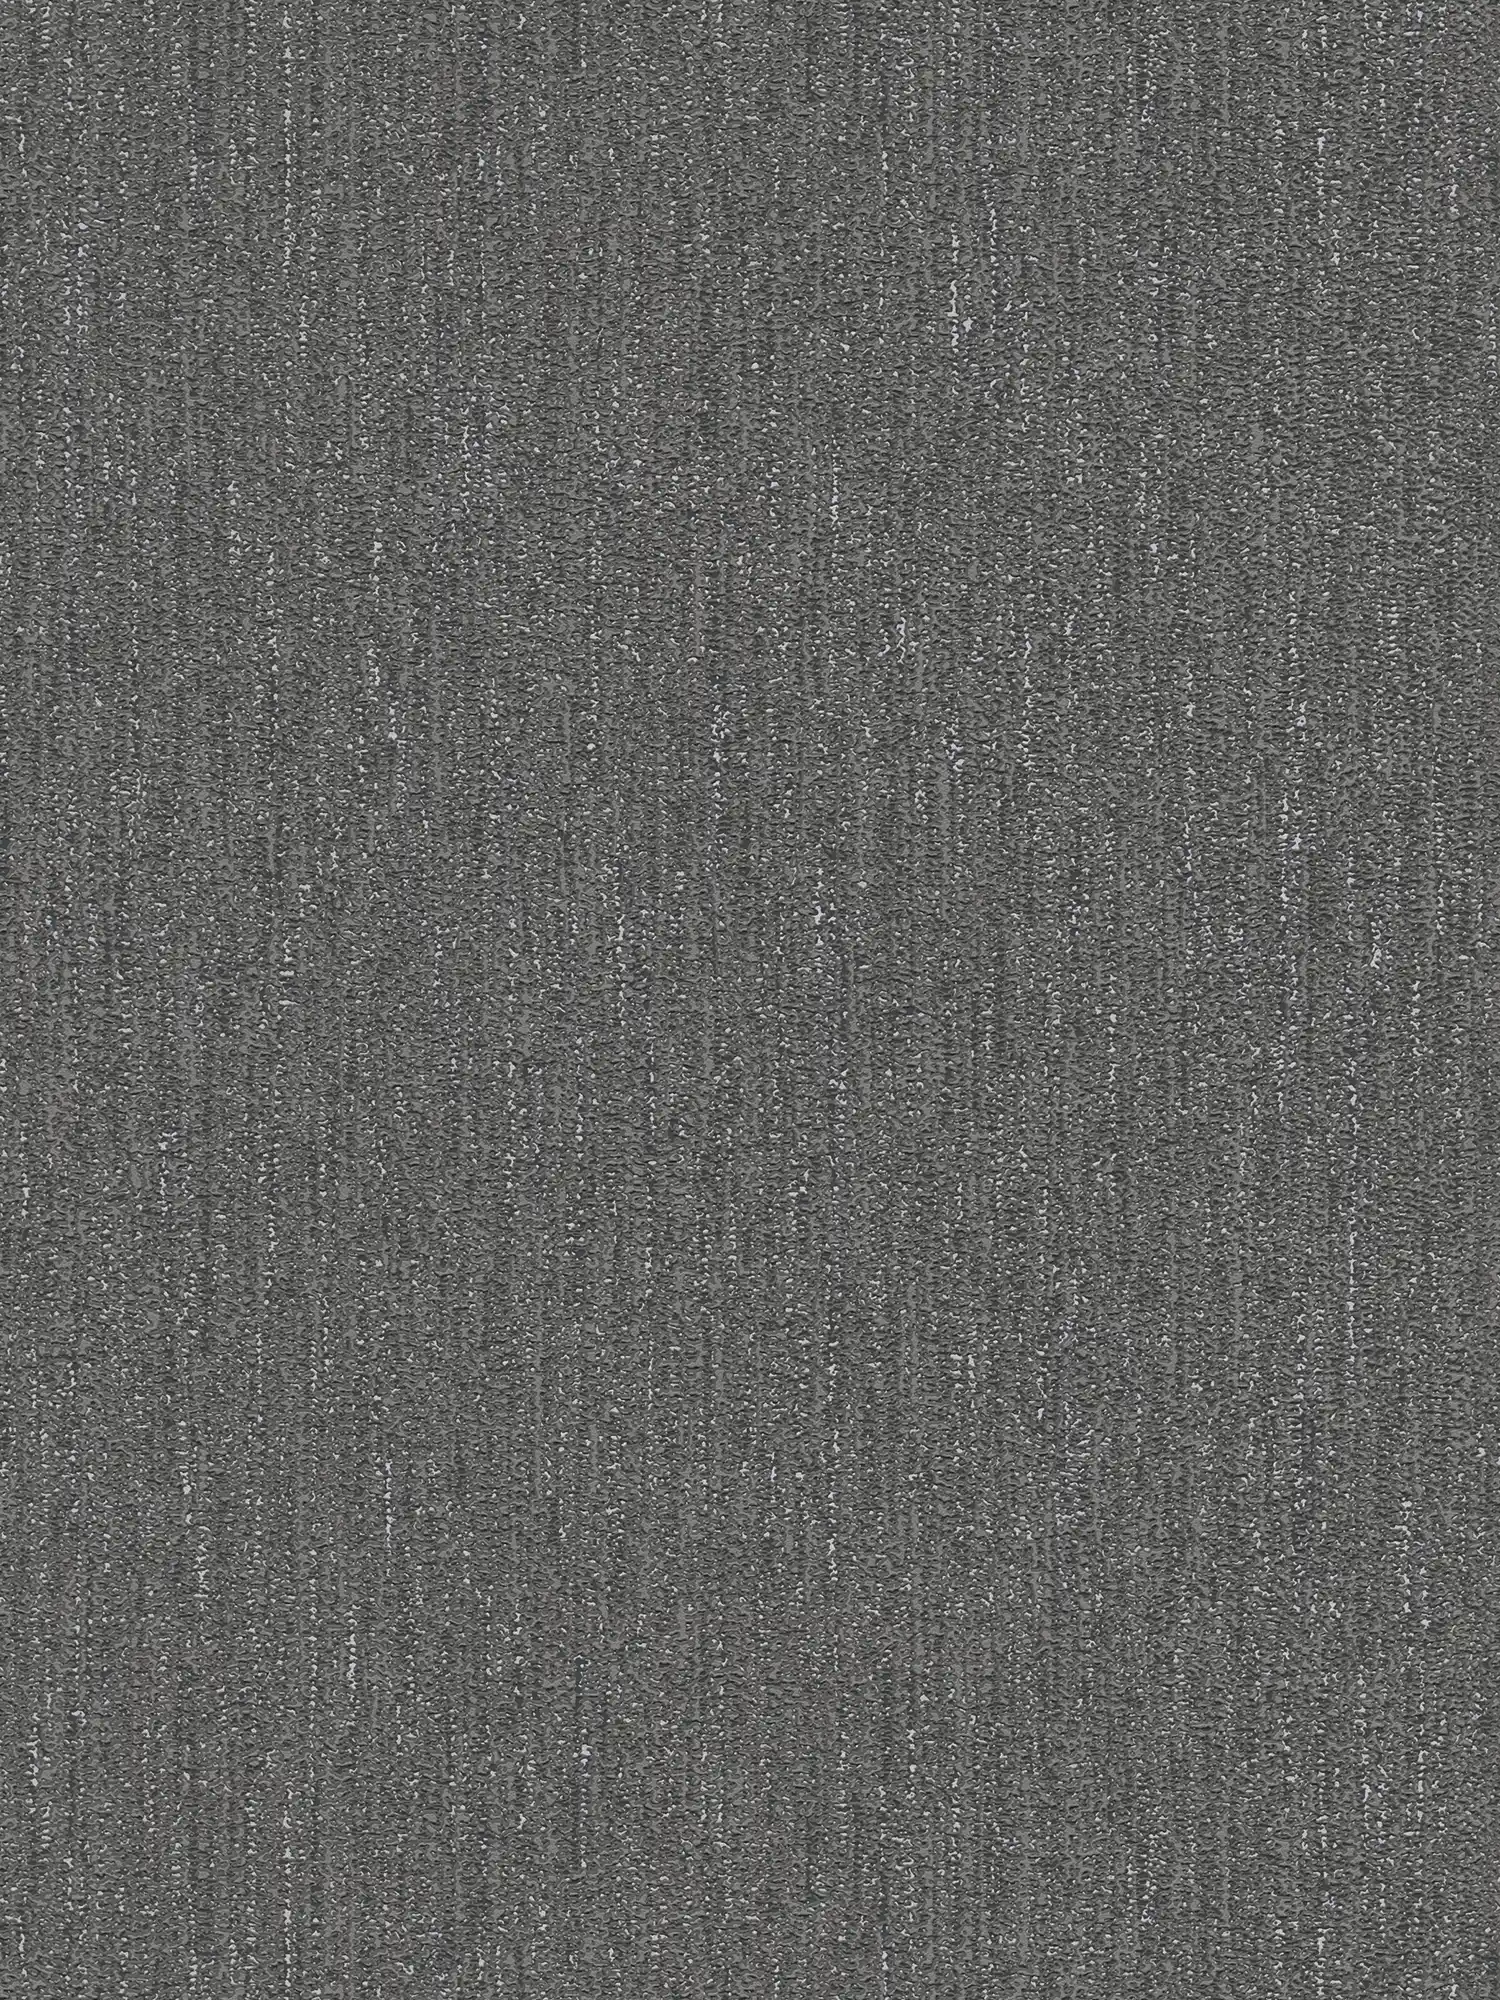 Leicht glänzende Tapete mit Gewebe Struktur – Schwarz, Grau, Silber
